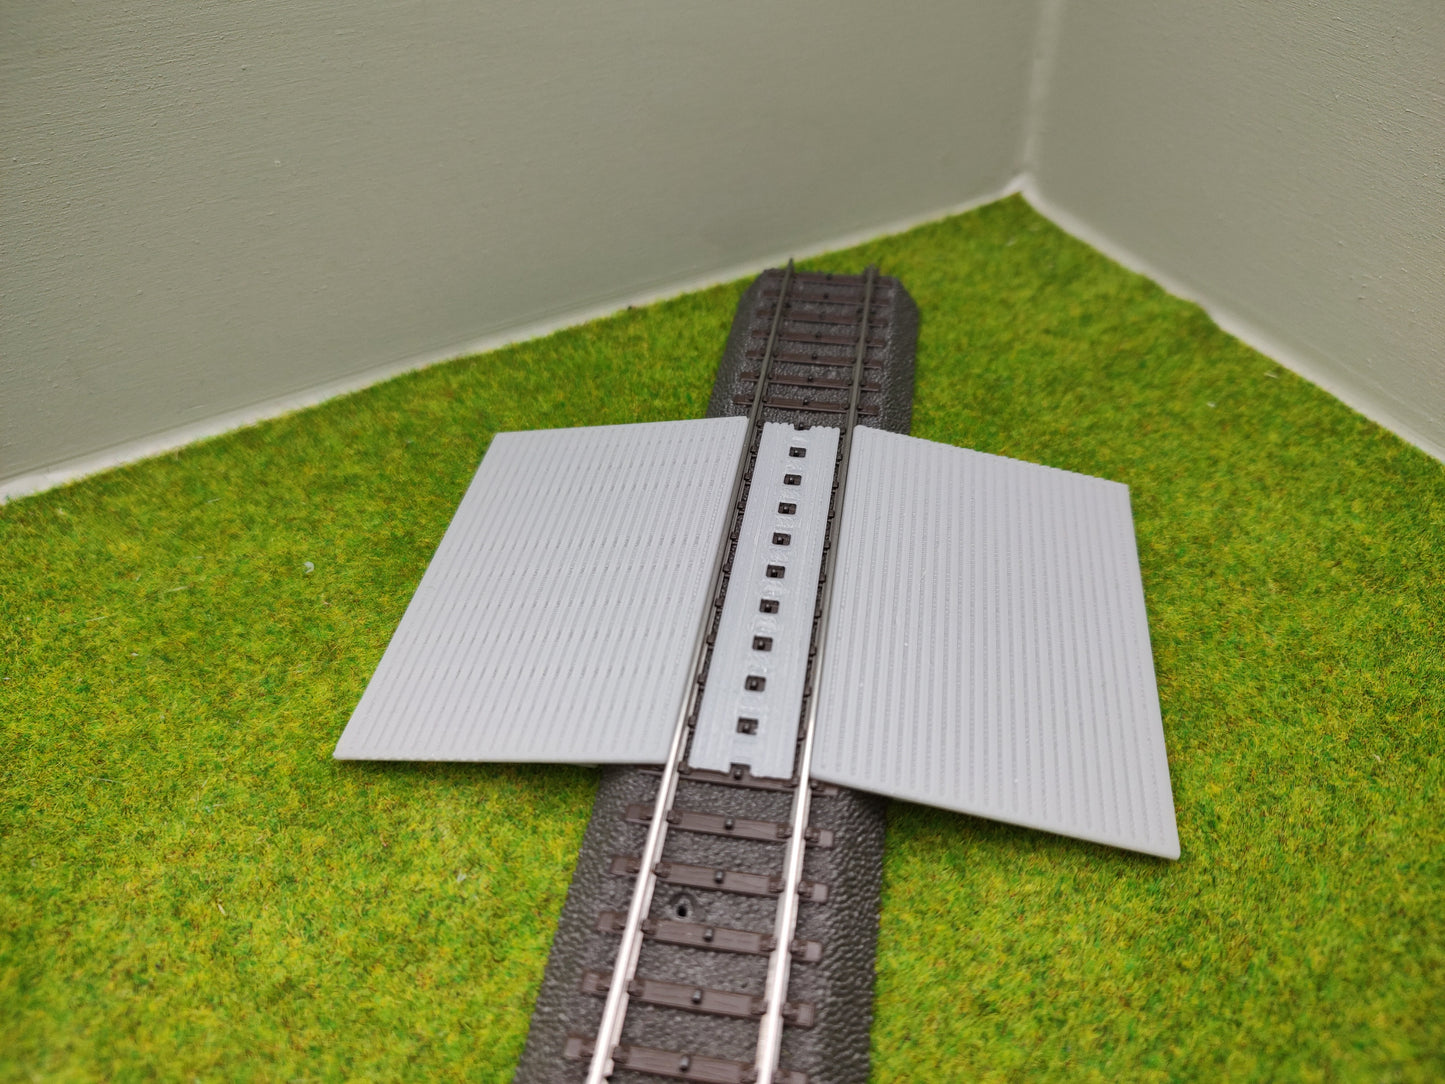 Bahnübergang H0 für Märklin C-Gleis-50x75mm - grau